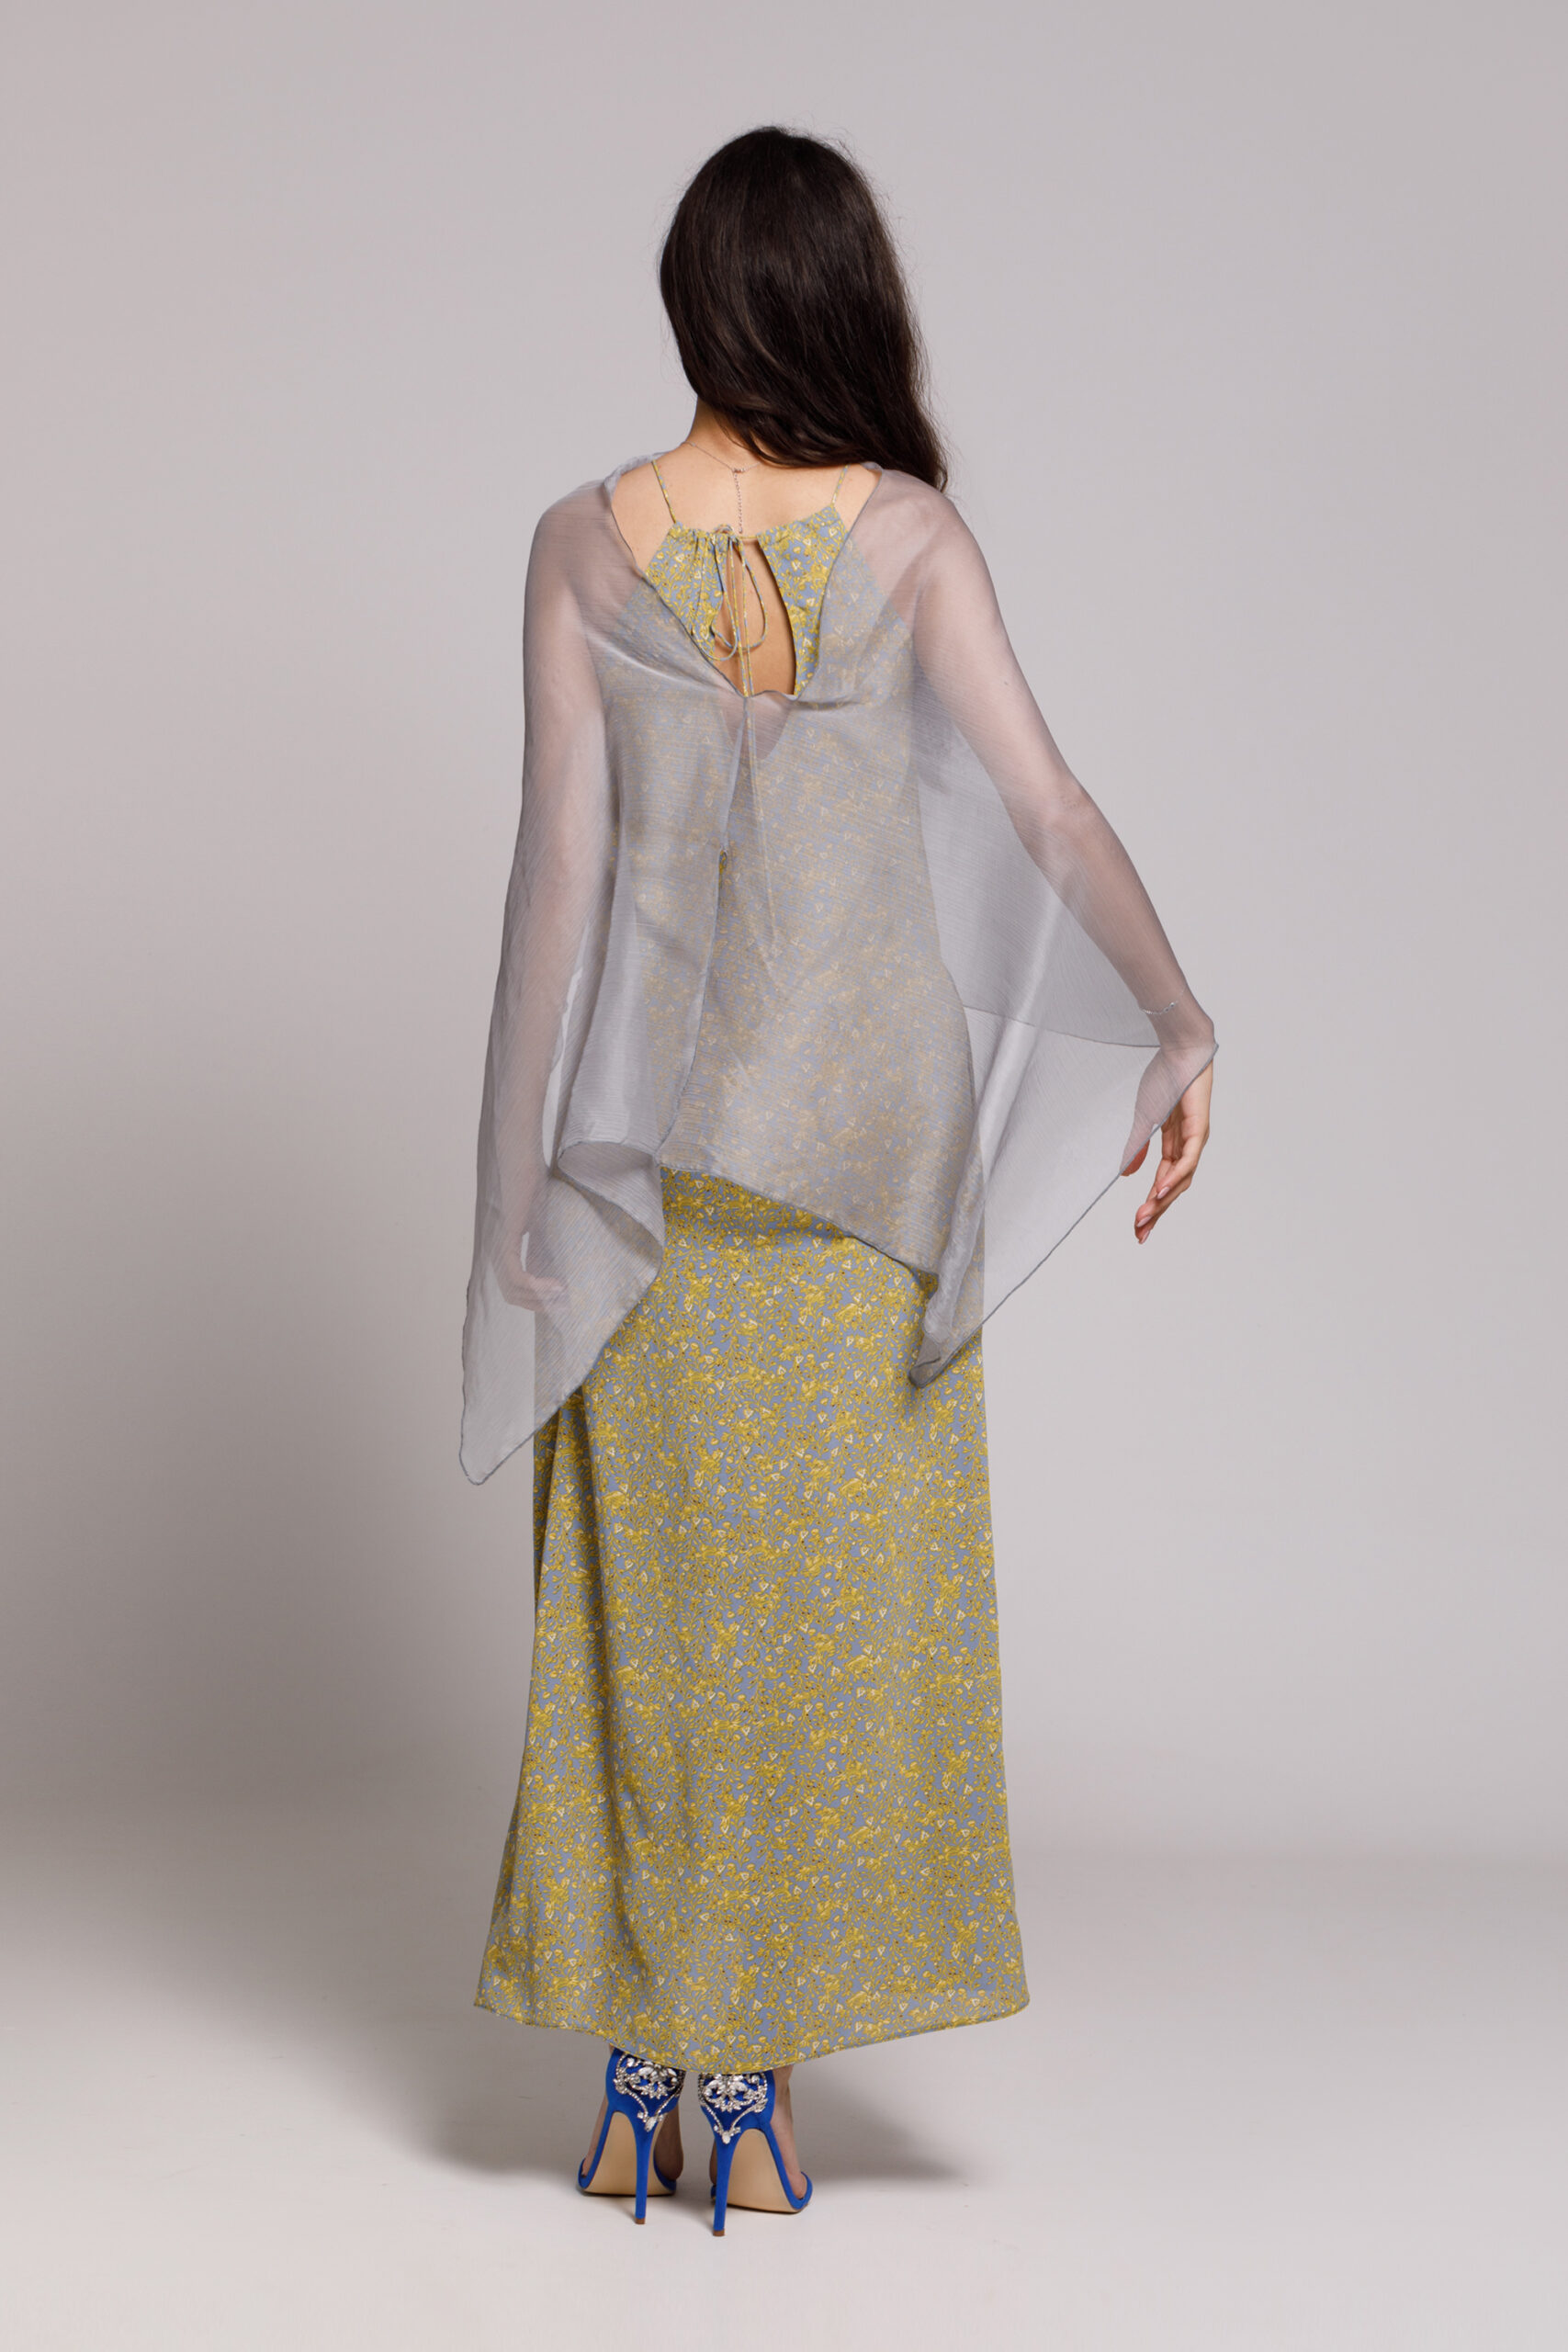 DARIA casual viscose dress with a gray veil. Natural fabrics, original design, handmade embroidery